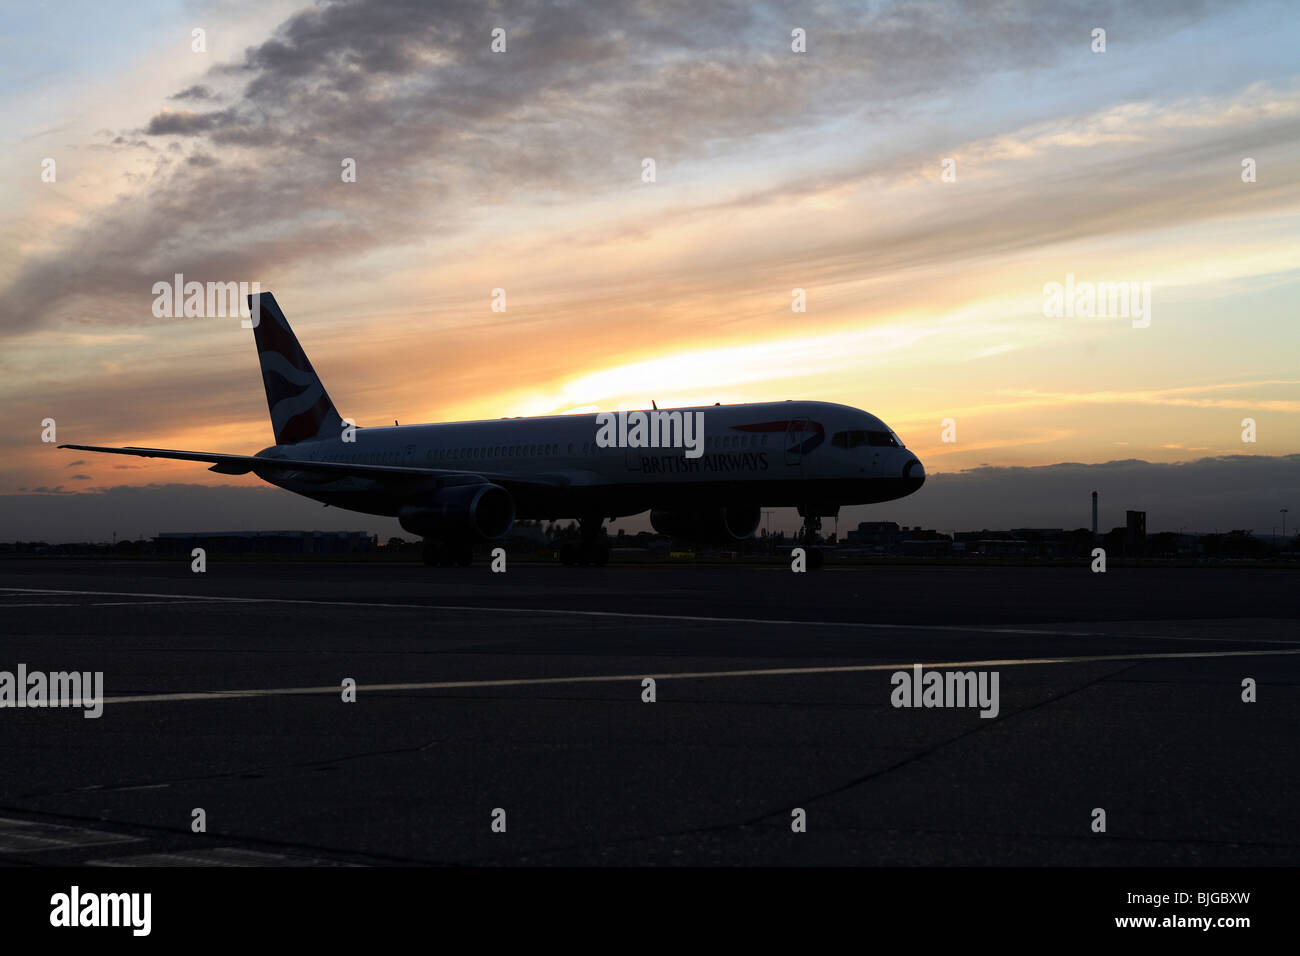 British Airways Flugzeuge am Flughafen Heathrow, London, Großbritannien Stockfoto